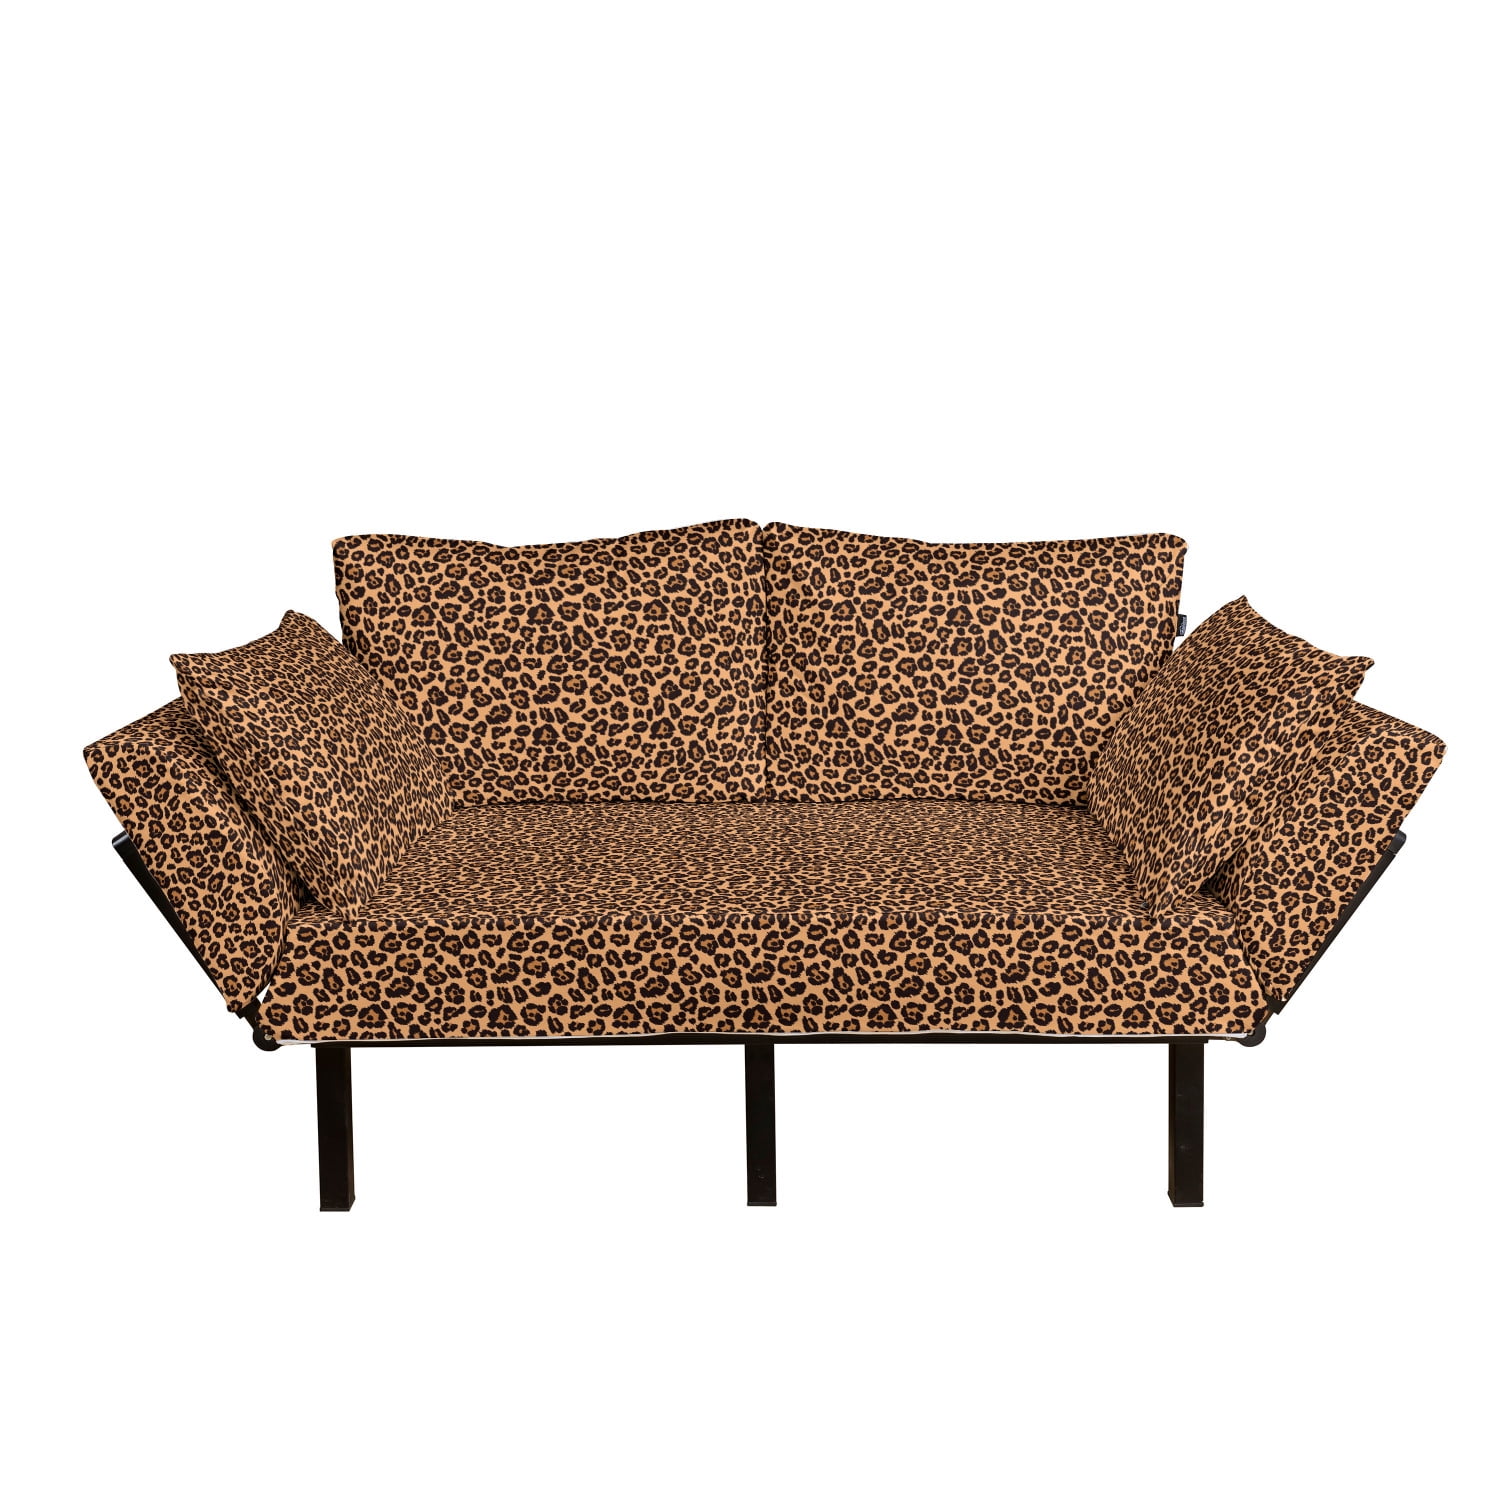 Leopard Print Futon Couch Orange Color